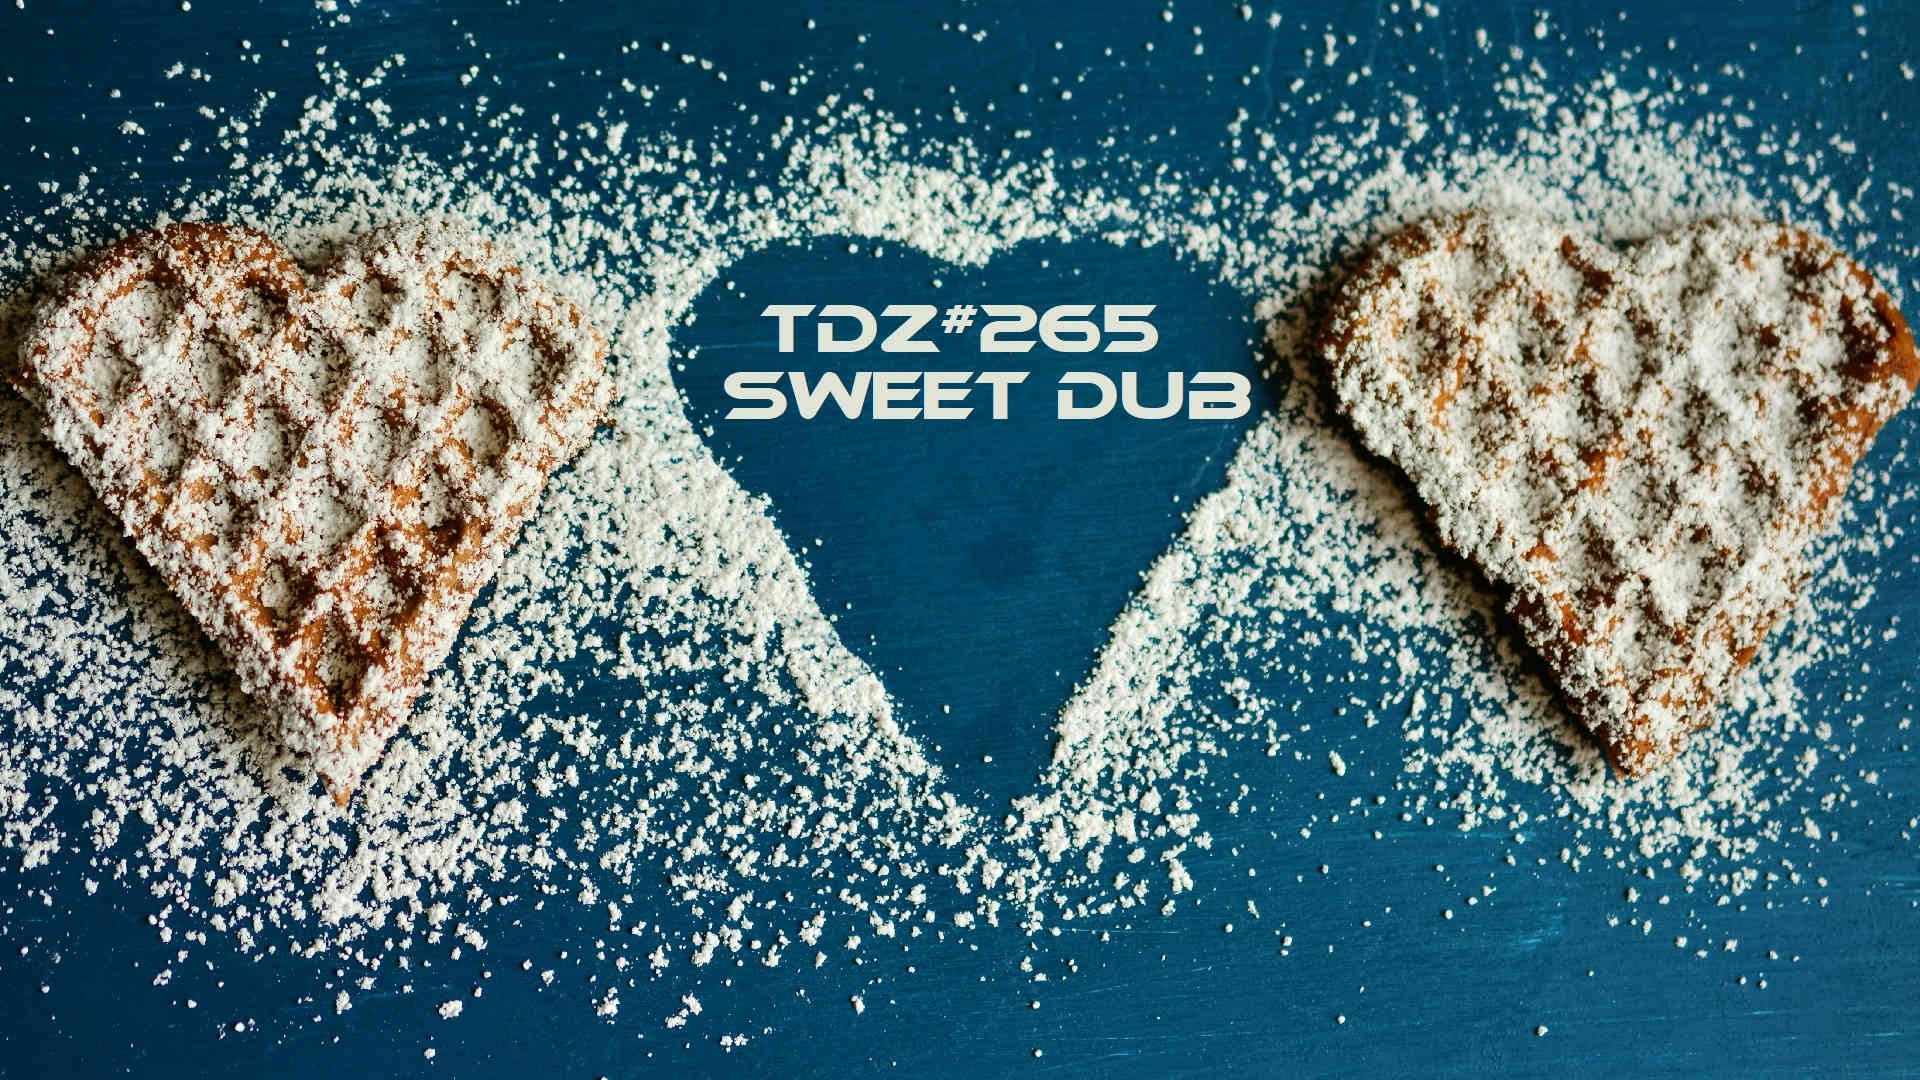 TDZ#265... Sweet Dub...